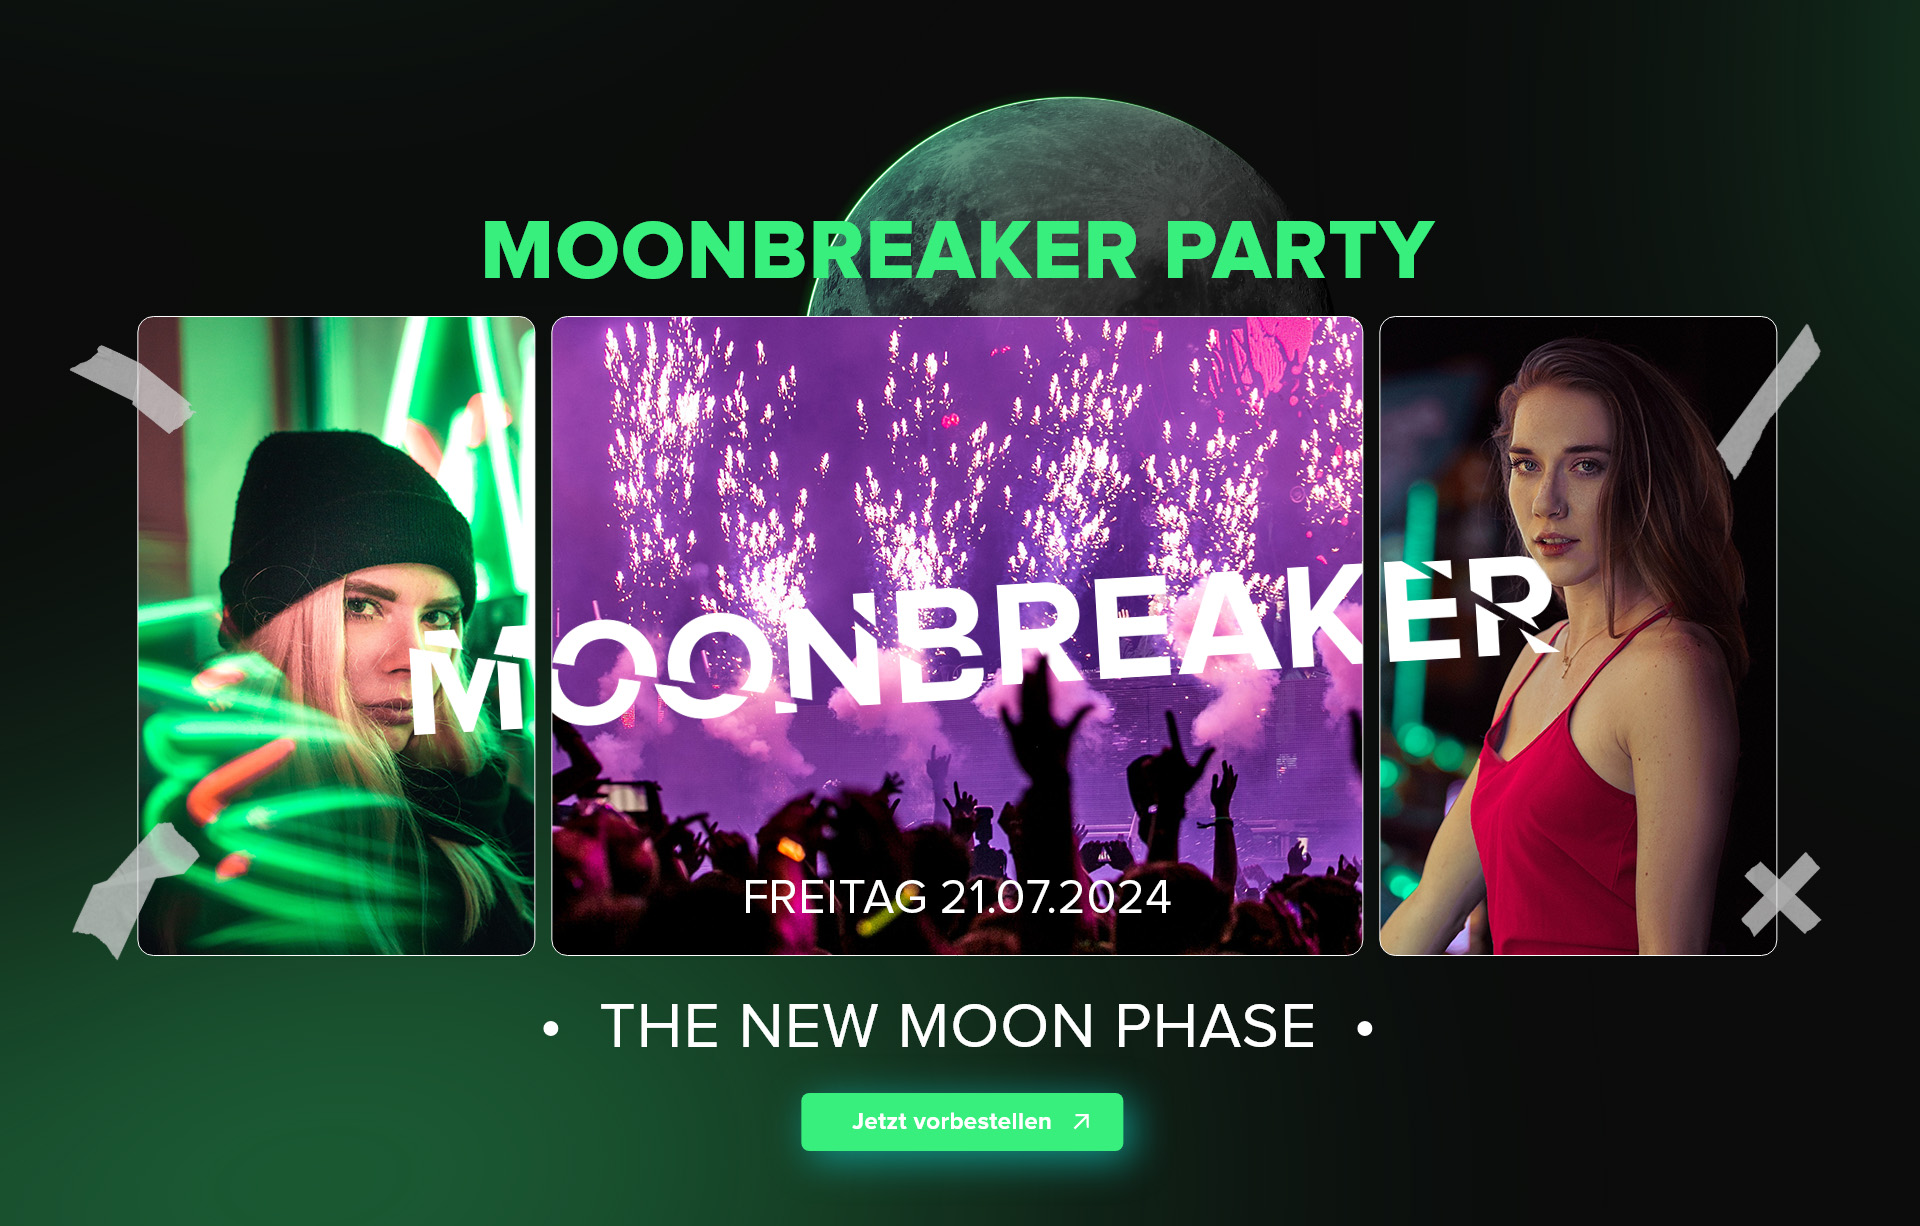 Eine aufregende Szene von der Moonbreaker Party.